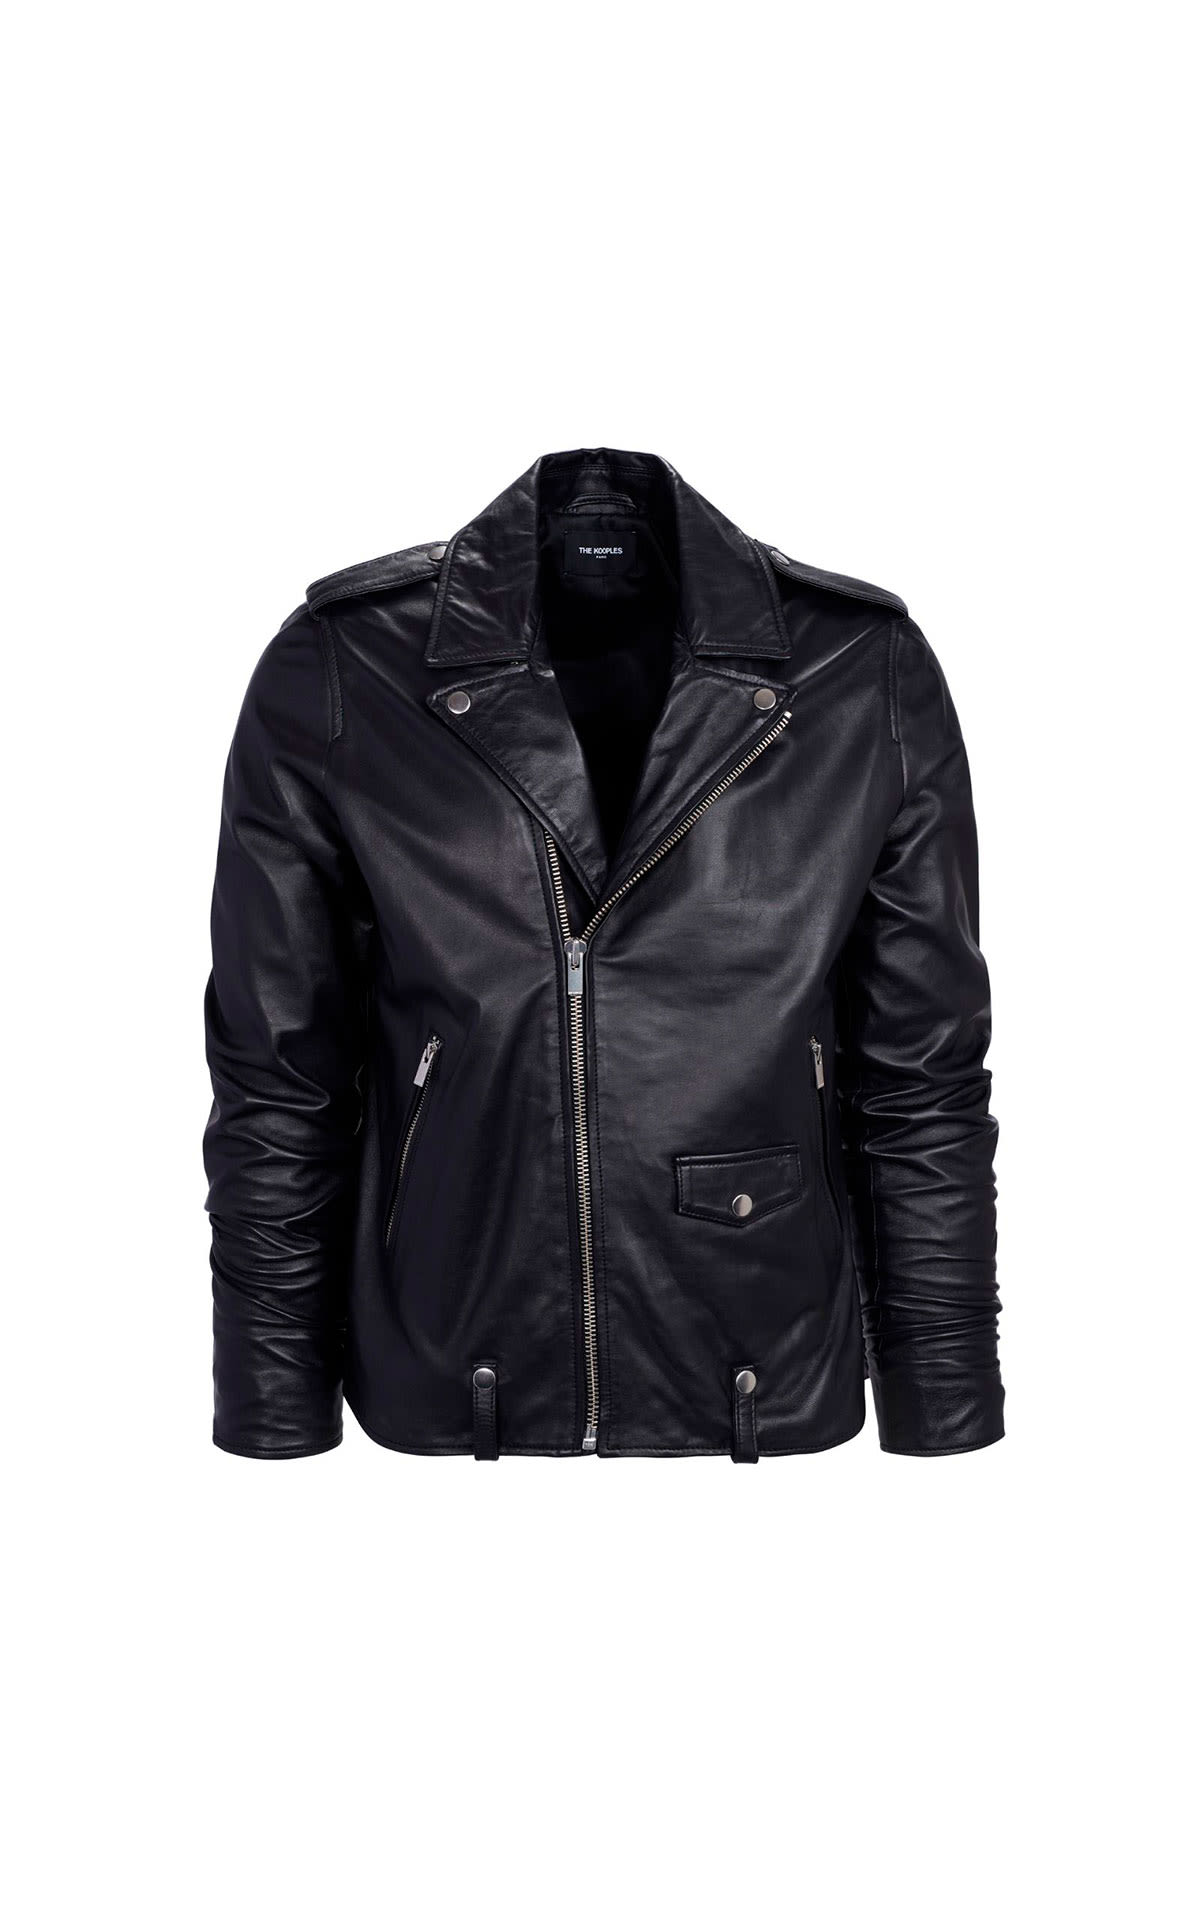 Black leather jacket The Kooples